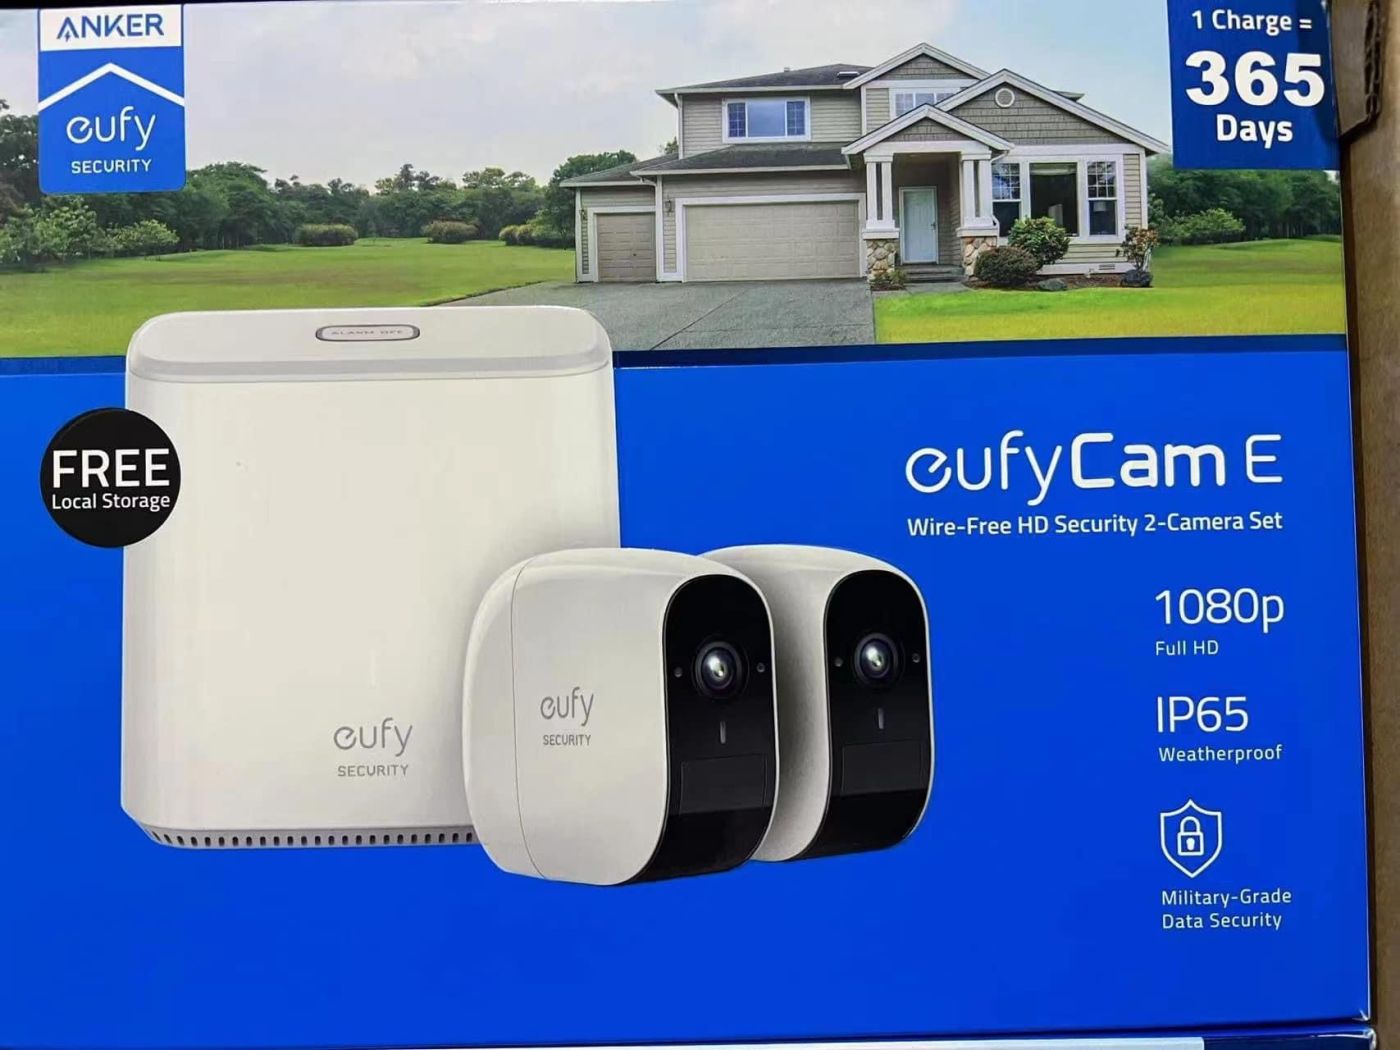 Camera Anker Eufy Camera E 365 Days Wire-Free HD Security 2-Camera Set - Cam vuông